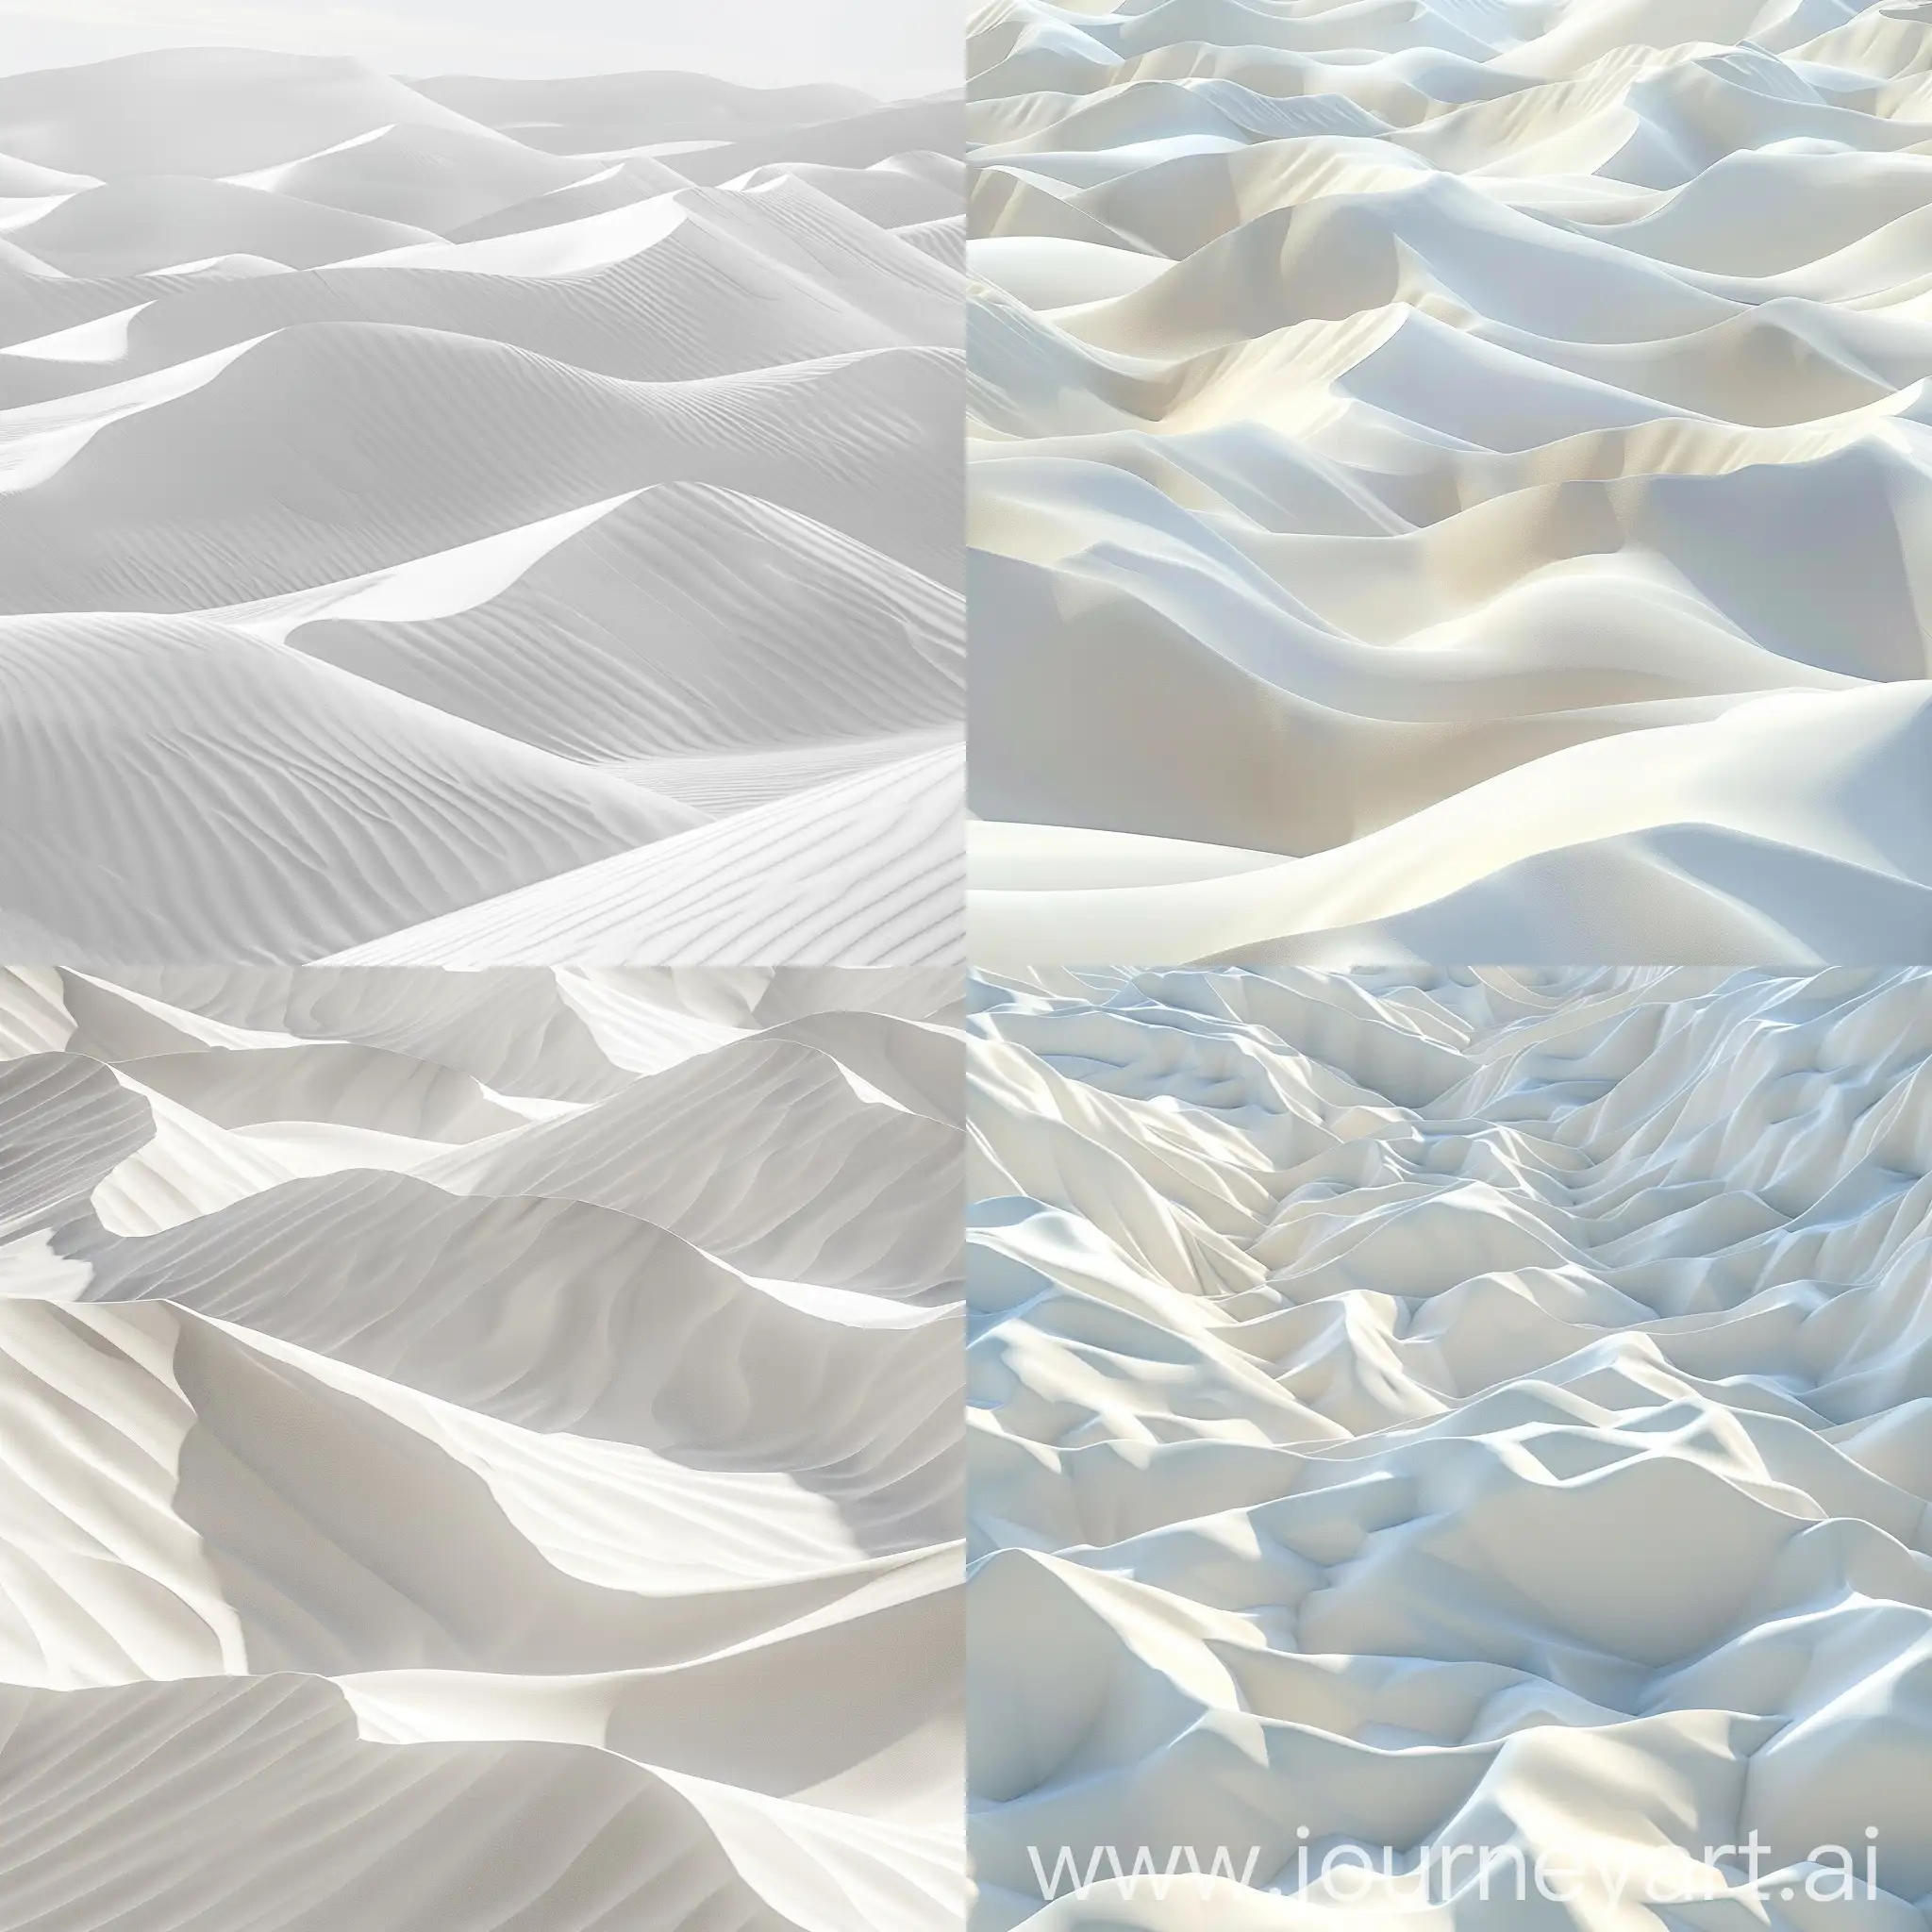 Voluminous-White-Sandy-Dunes-Landscape